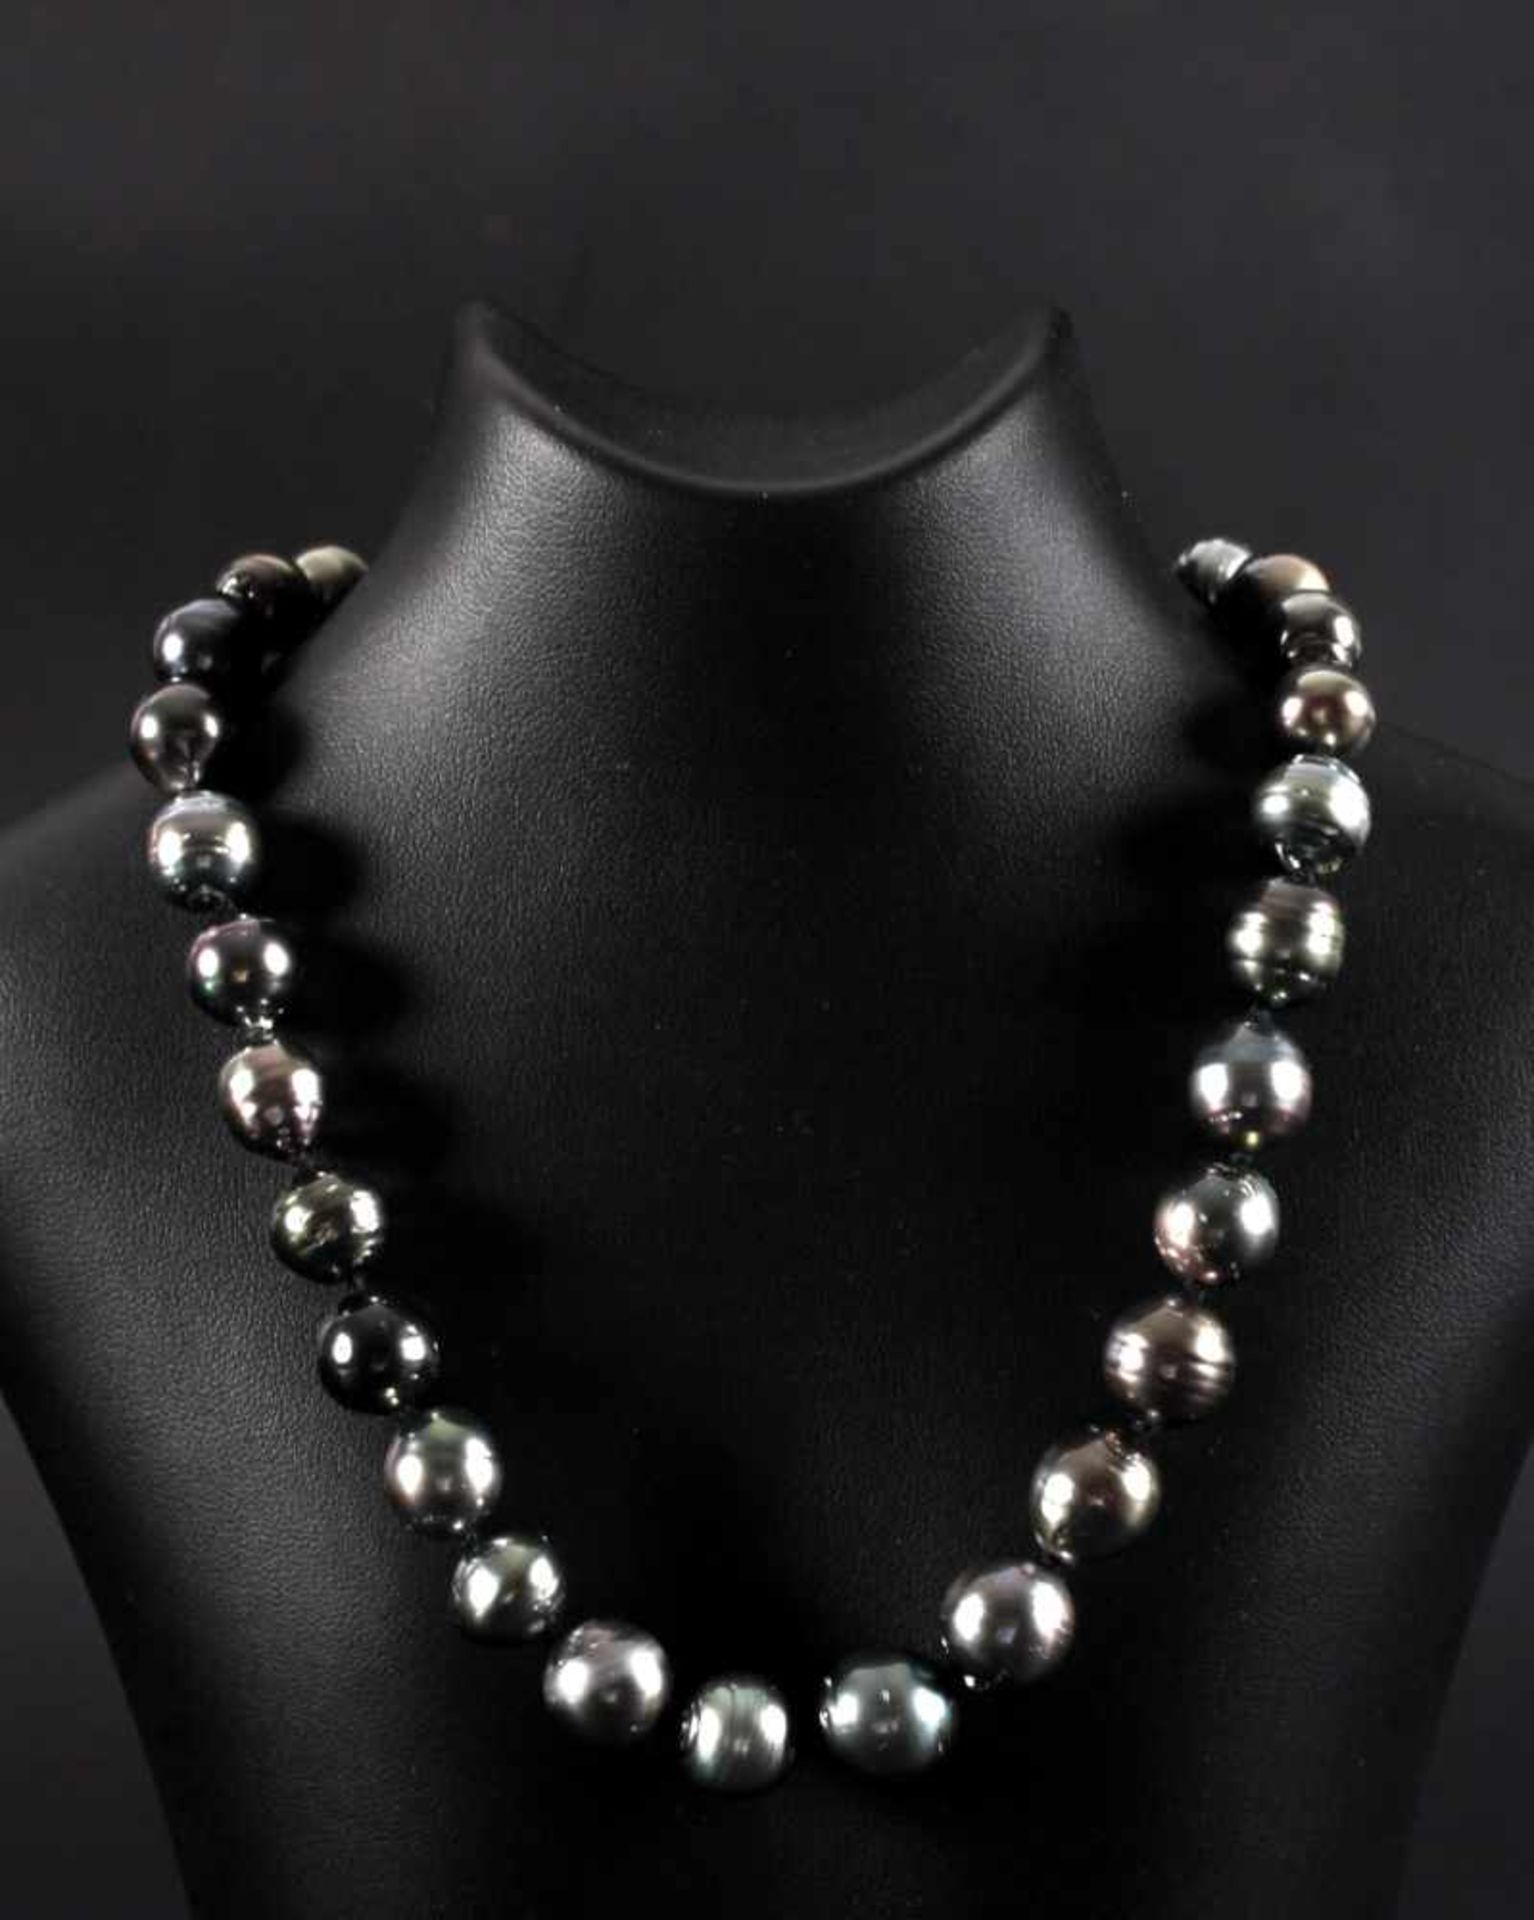 Halskette mit Tahitiperlen und silbernen Magnetverschluss30 dunkle metallisch glänzende Perlen, nach